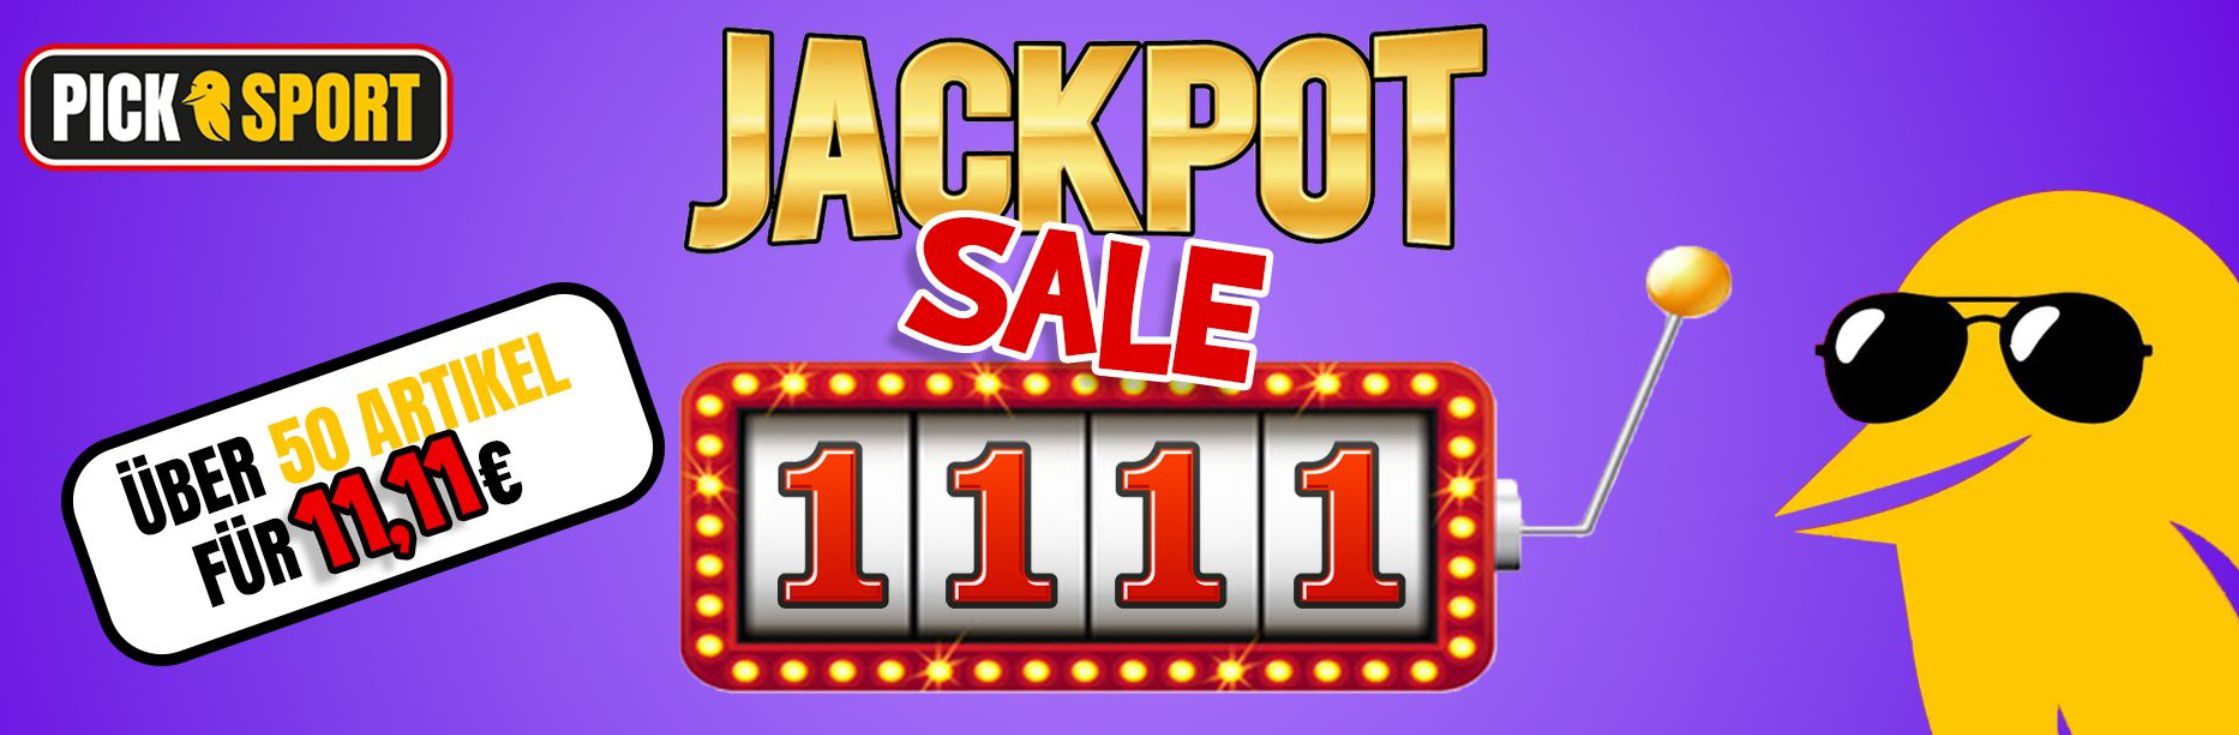 Picksport Jackpot Sale   ausgewählte Artikel für 11,11€